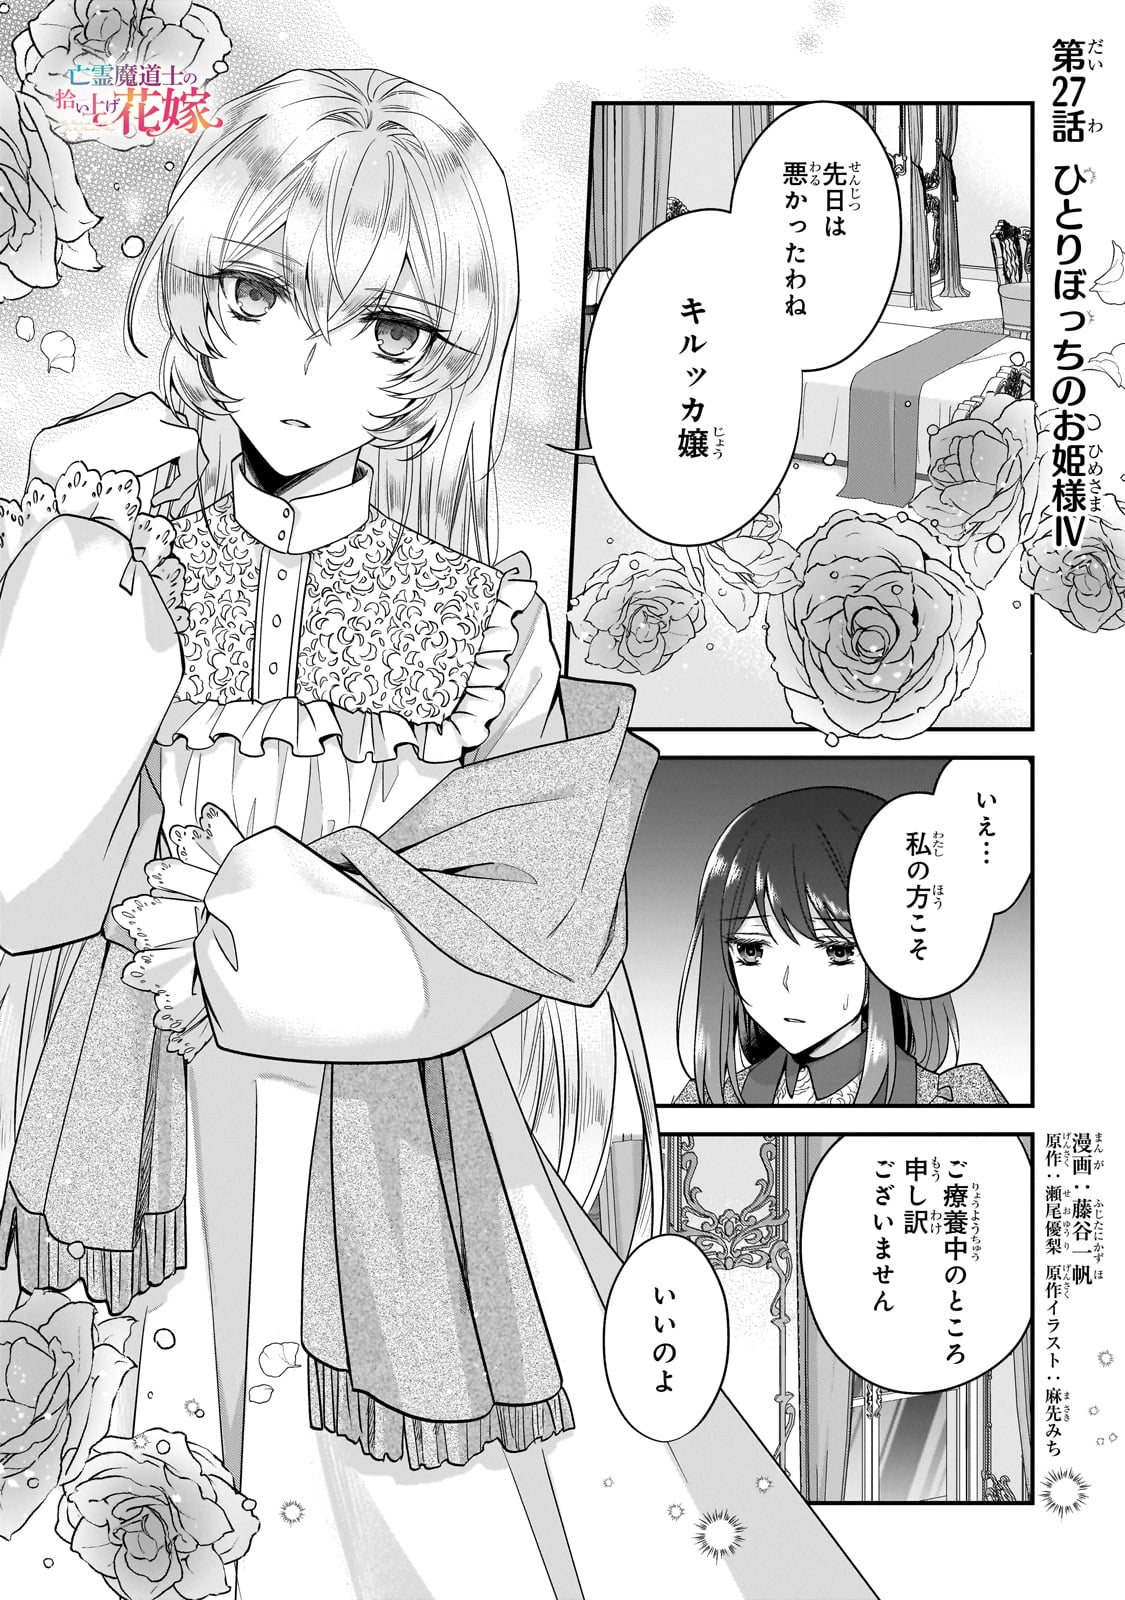 Bourei Madoushi no Hiroiage Hanayome - Chapter 27 - Page 1